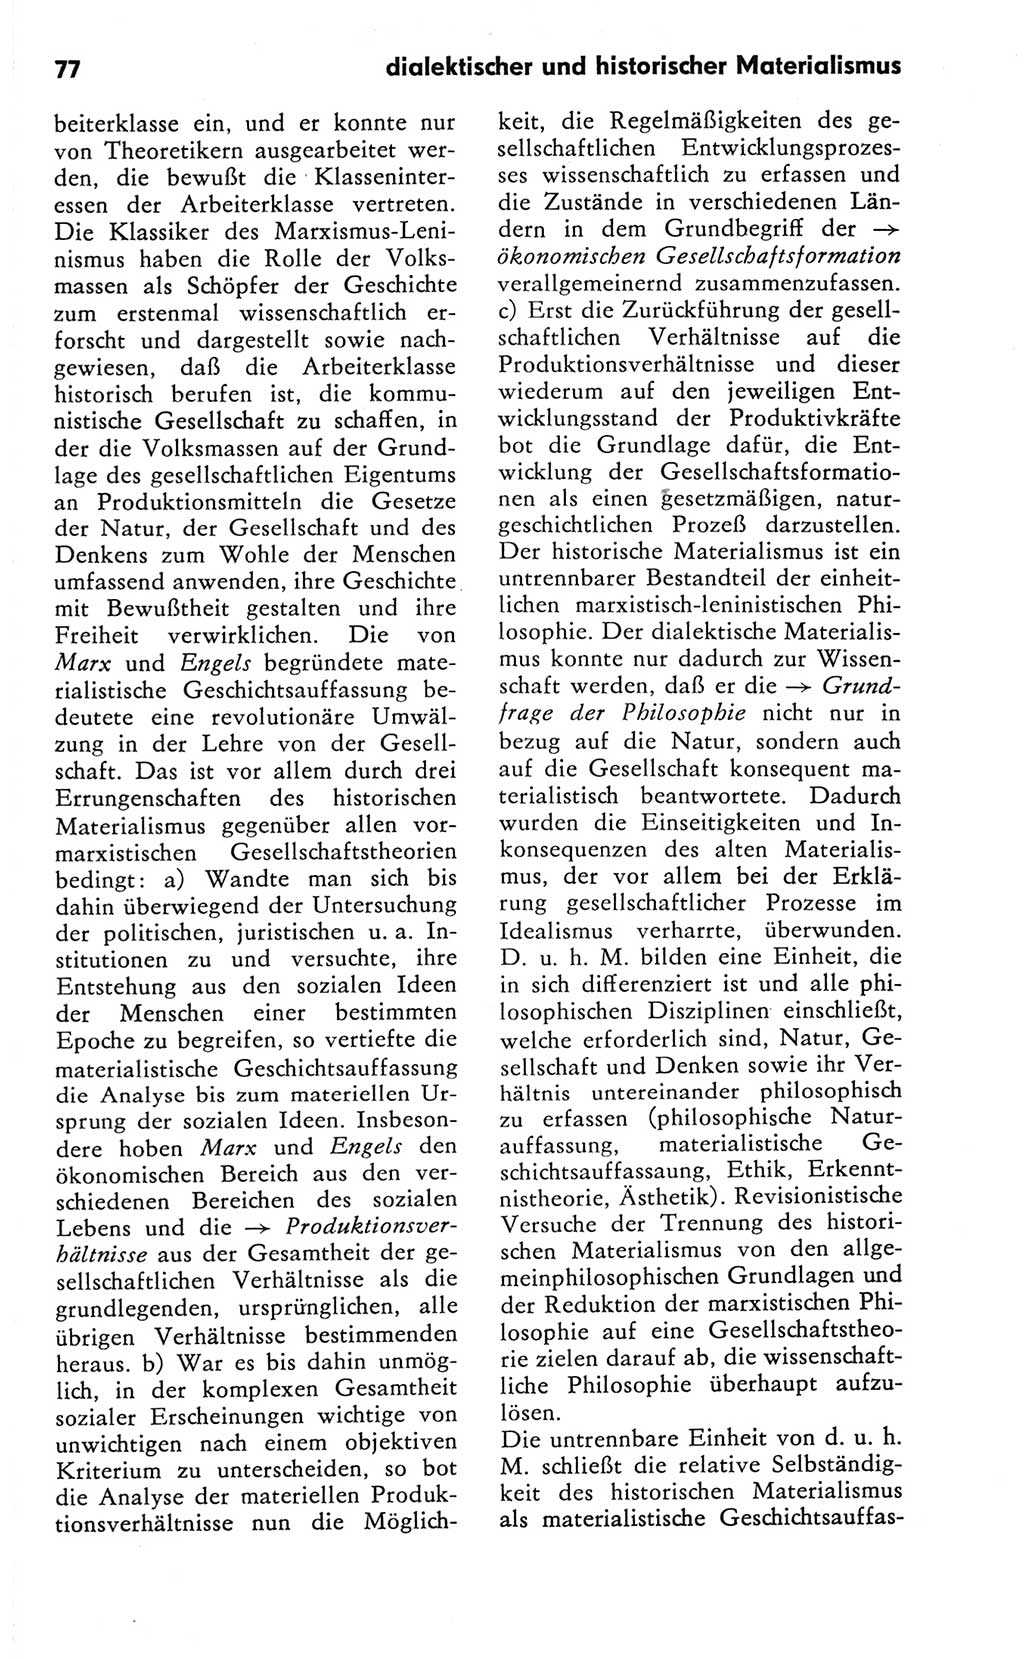 Kleines Wörterbuch der marxistisch-leninistischen Philosophie [Deutsche Demokratische Republik (DDR)] 1981, Seite 77 (Kl. Wb. ML Phil. DDR 1981, S. 77)